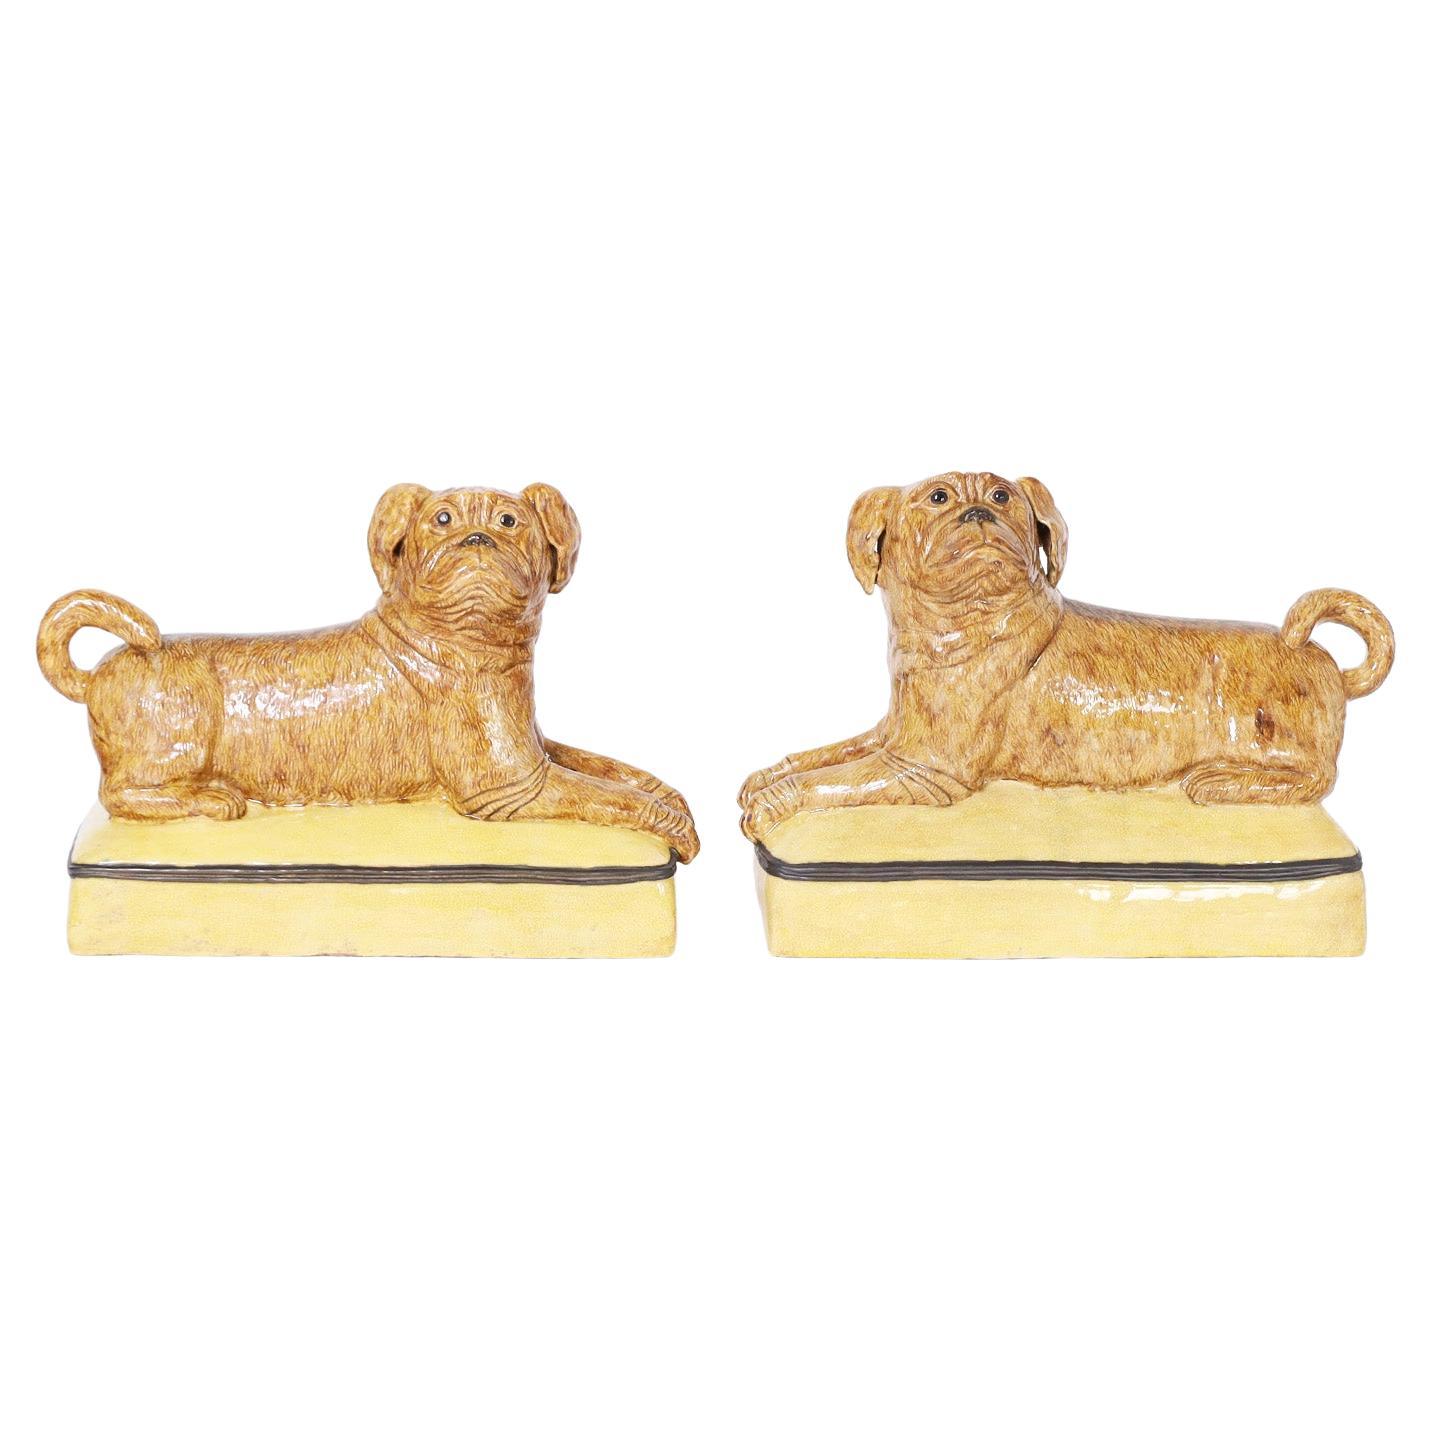 Pair of Italian Ceramic Recumbent Dogs or Pugs For Sale